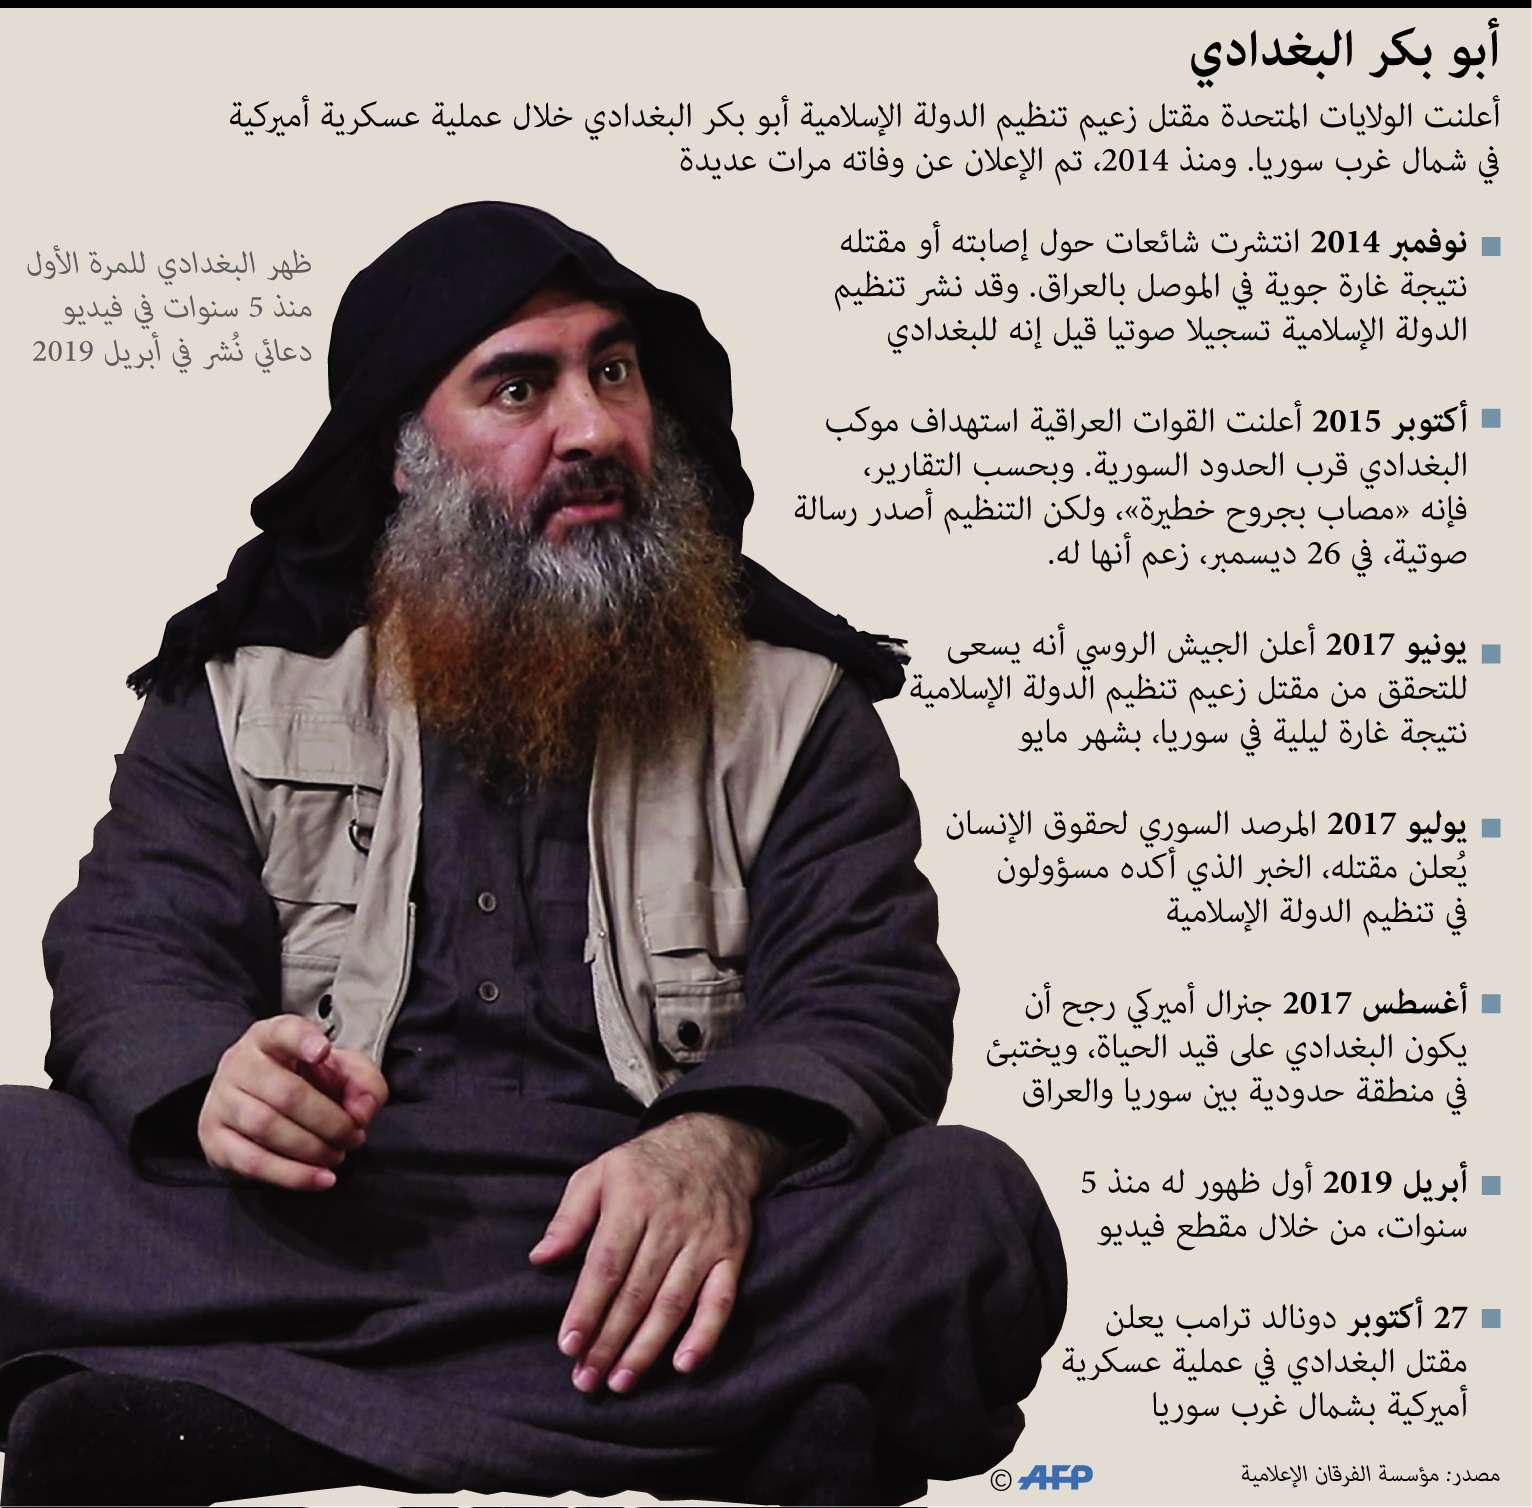 زعيم تنظيم الدولة الاسلامية في العراق والشام ابو بكر البغدادي